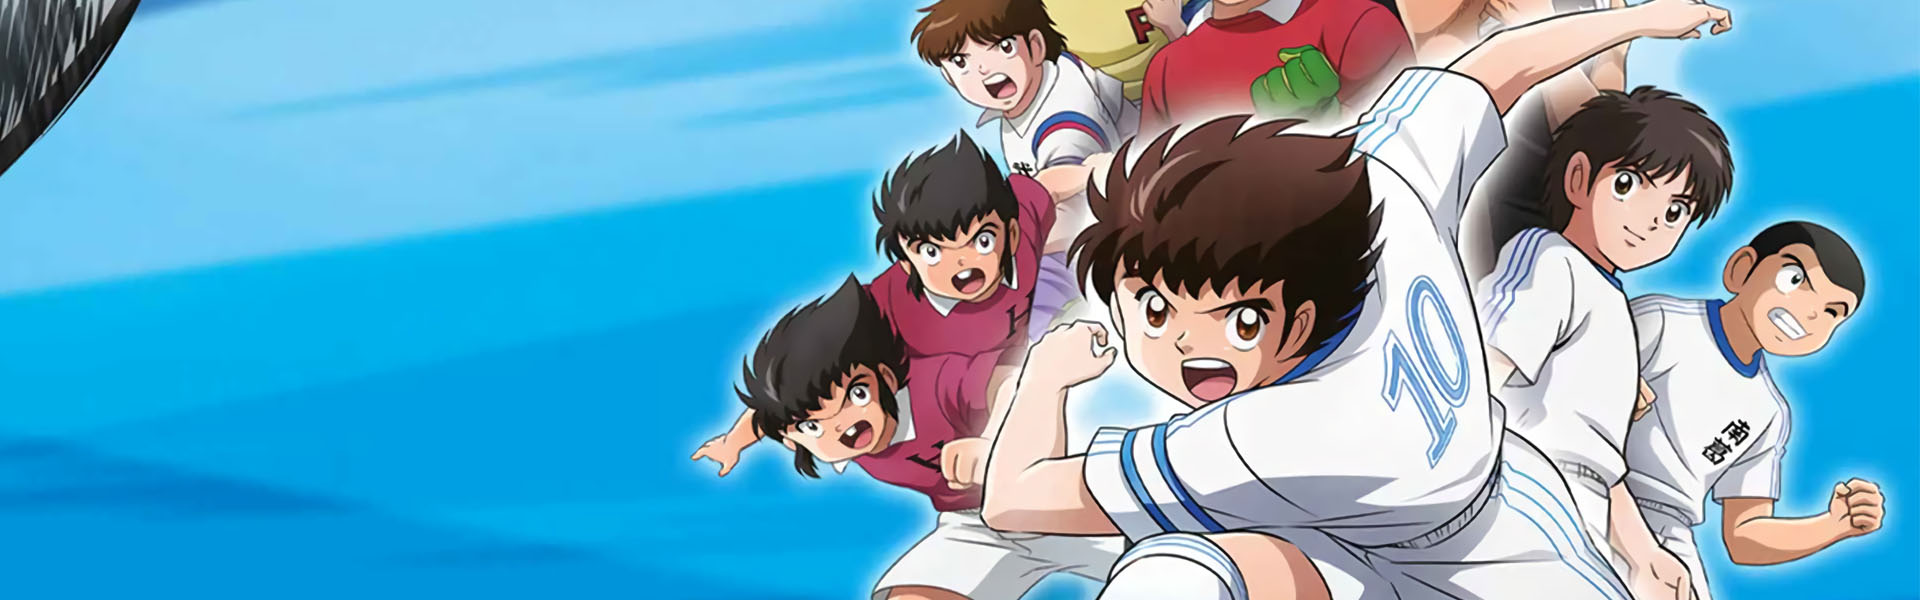 Assistir Captain Tsubasa 2: Junior Youth-hen Todos os episódios